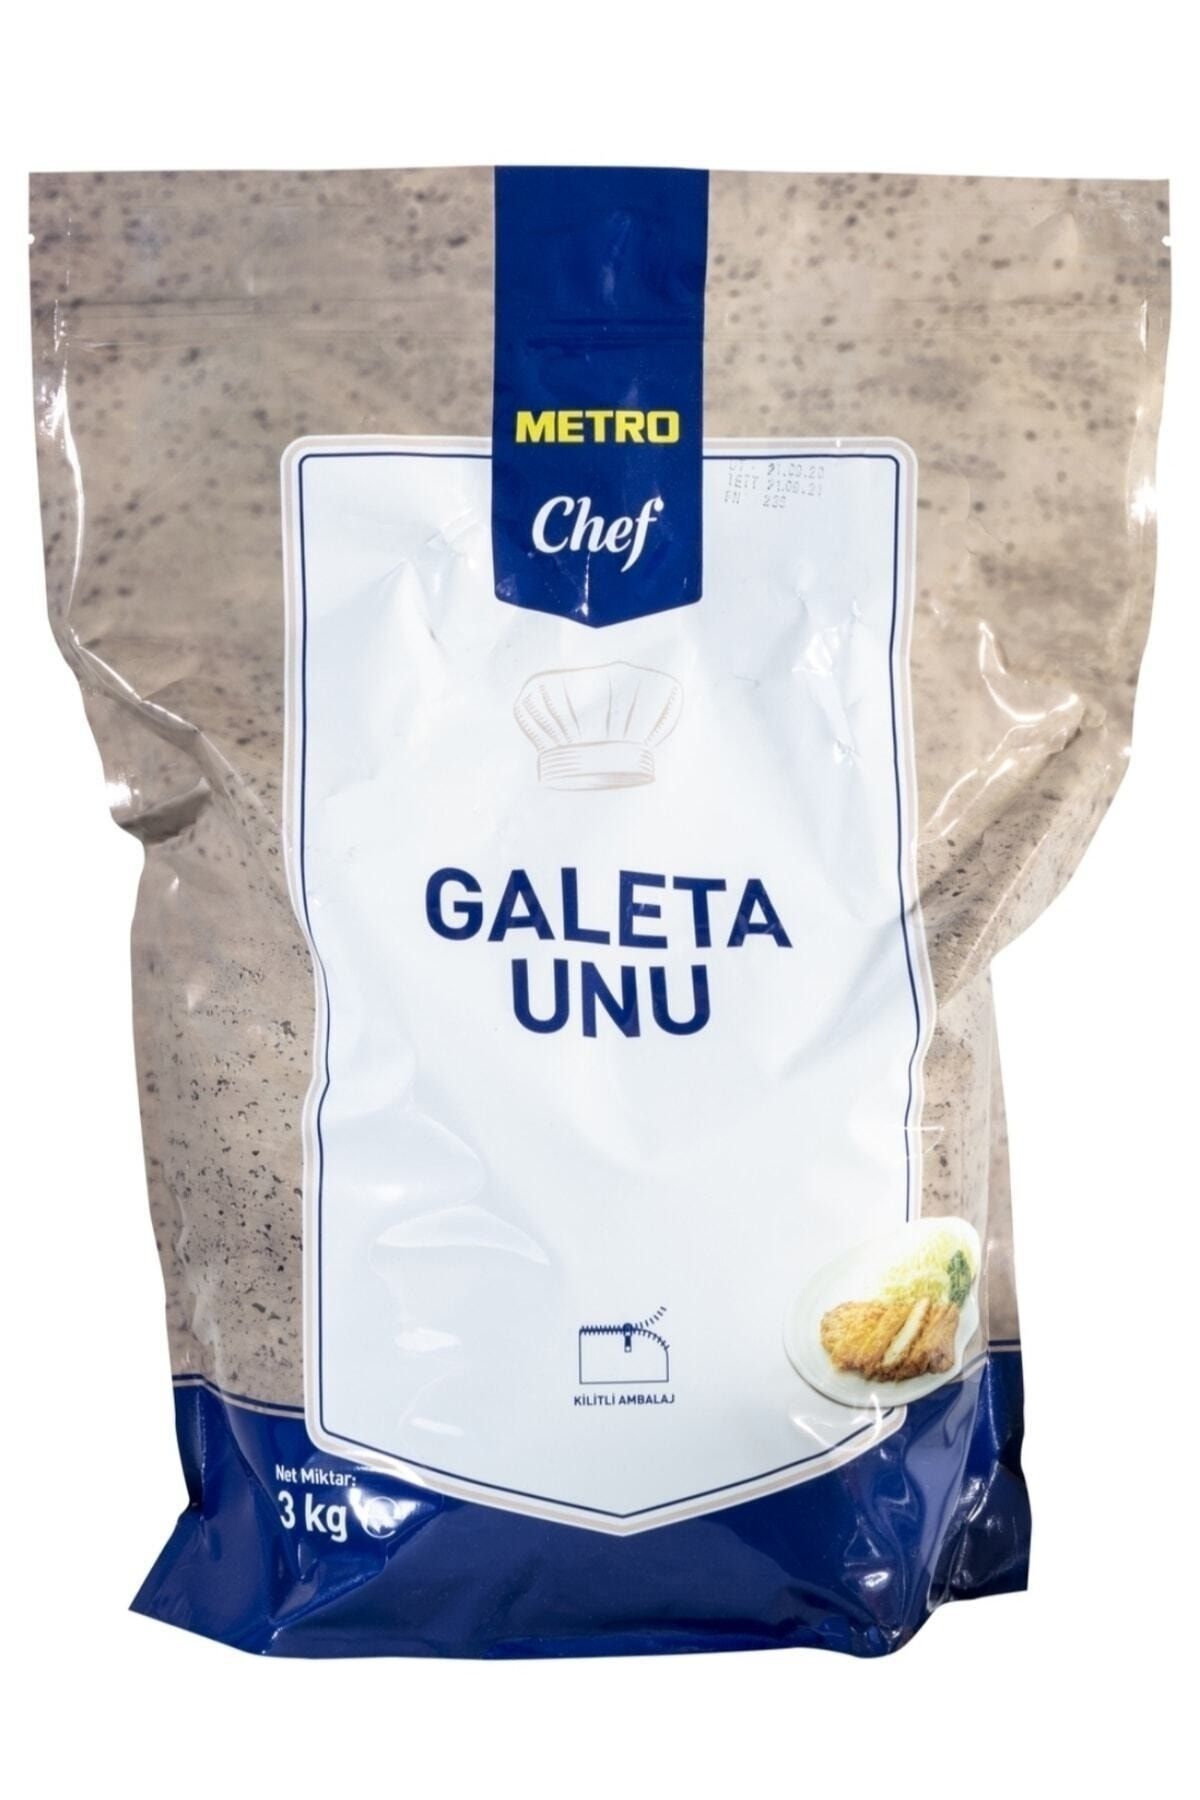 Metro Chef Galeta Unu - 3 kg